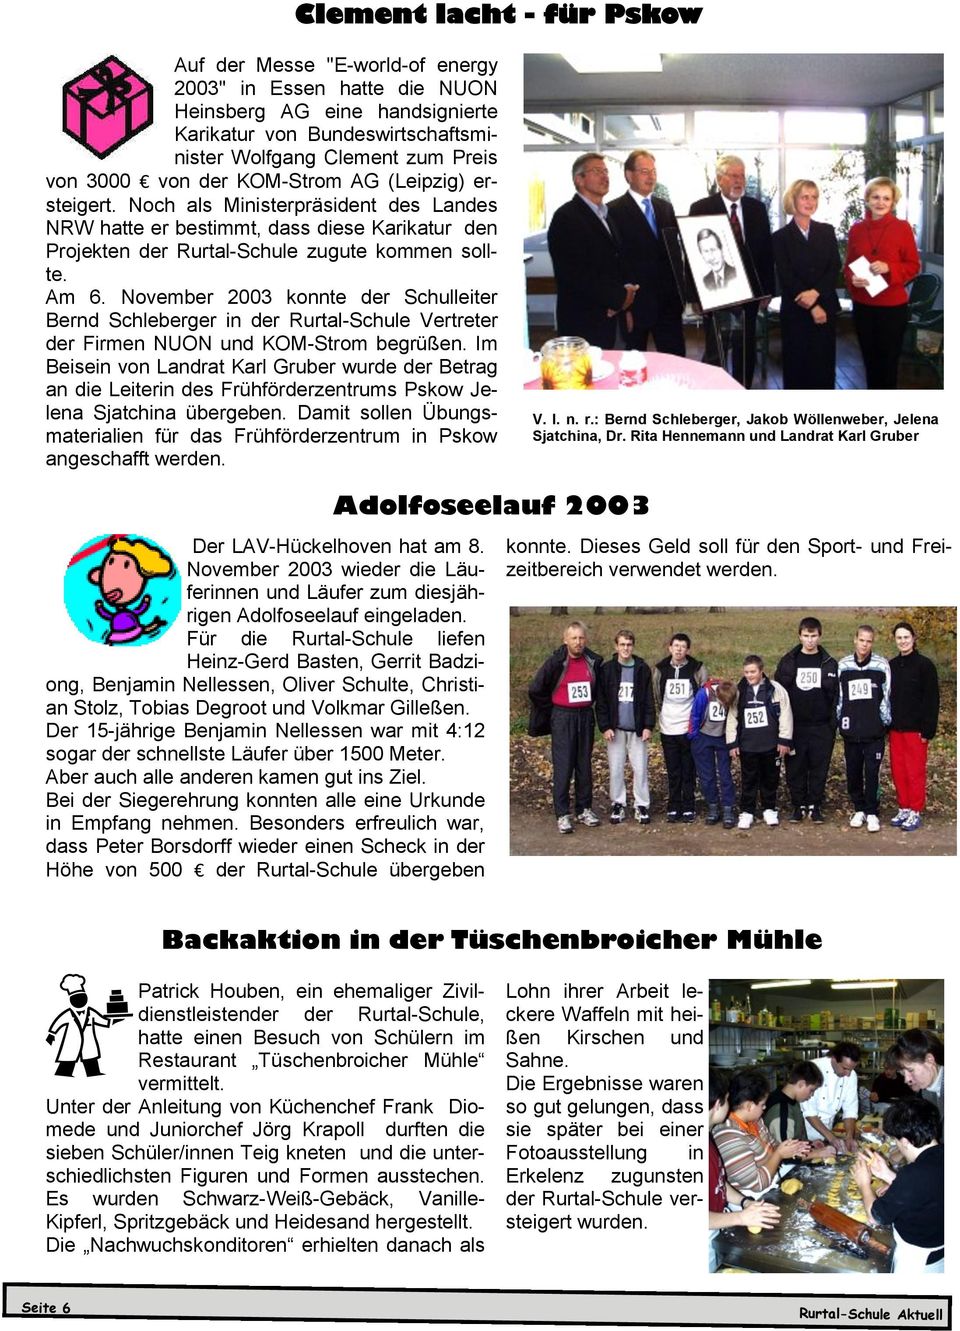 November 2003 konnte der Schulleiter Bernd Schleberger in der Rurtal-Schule Vertreter der Firmen NUON und KOM-Strom begrüßen.